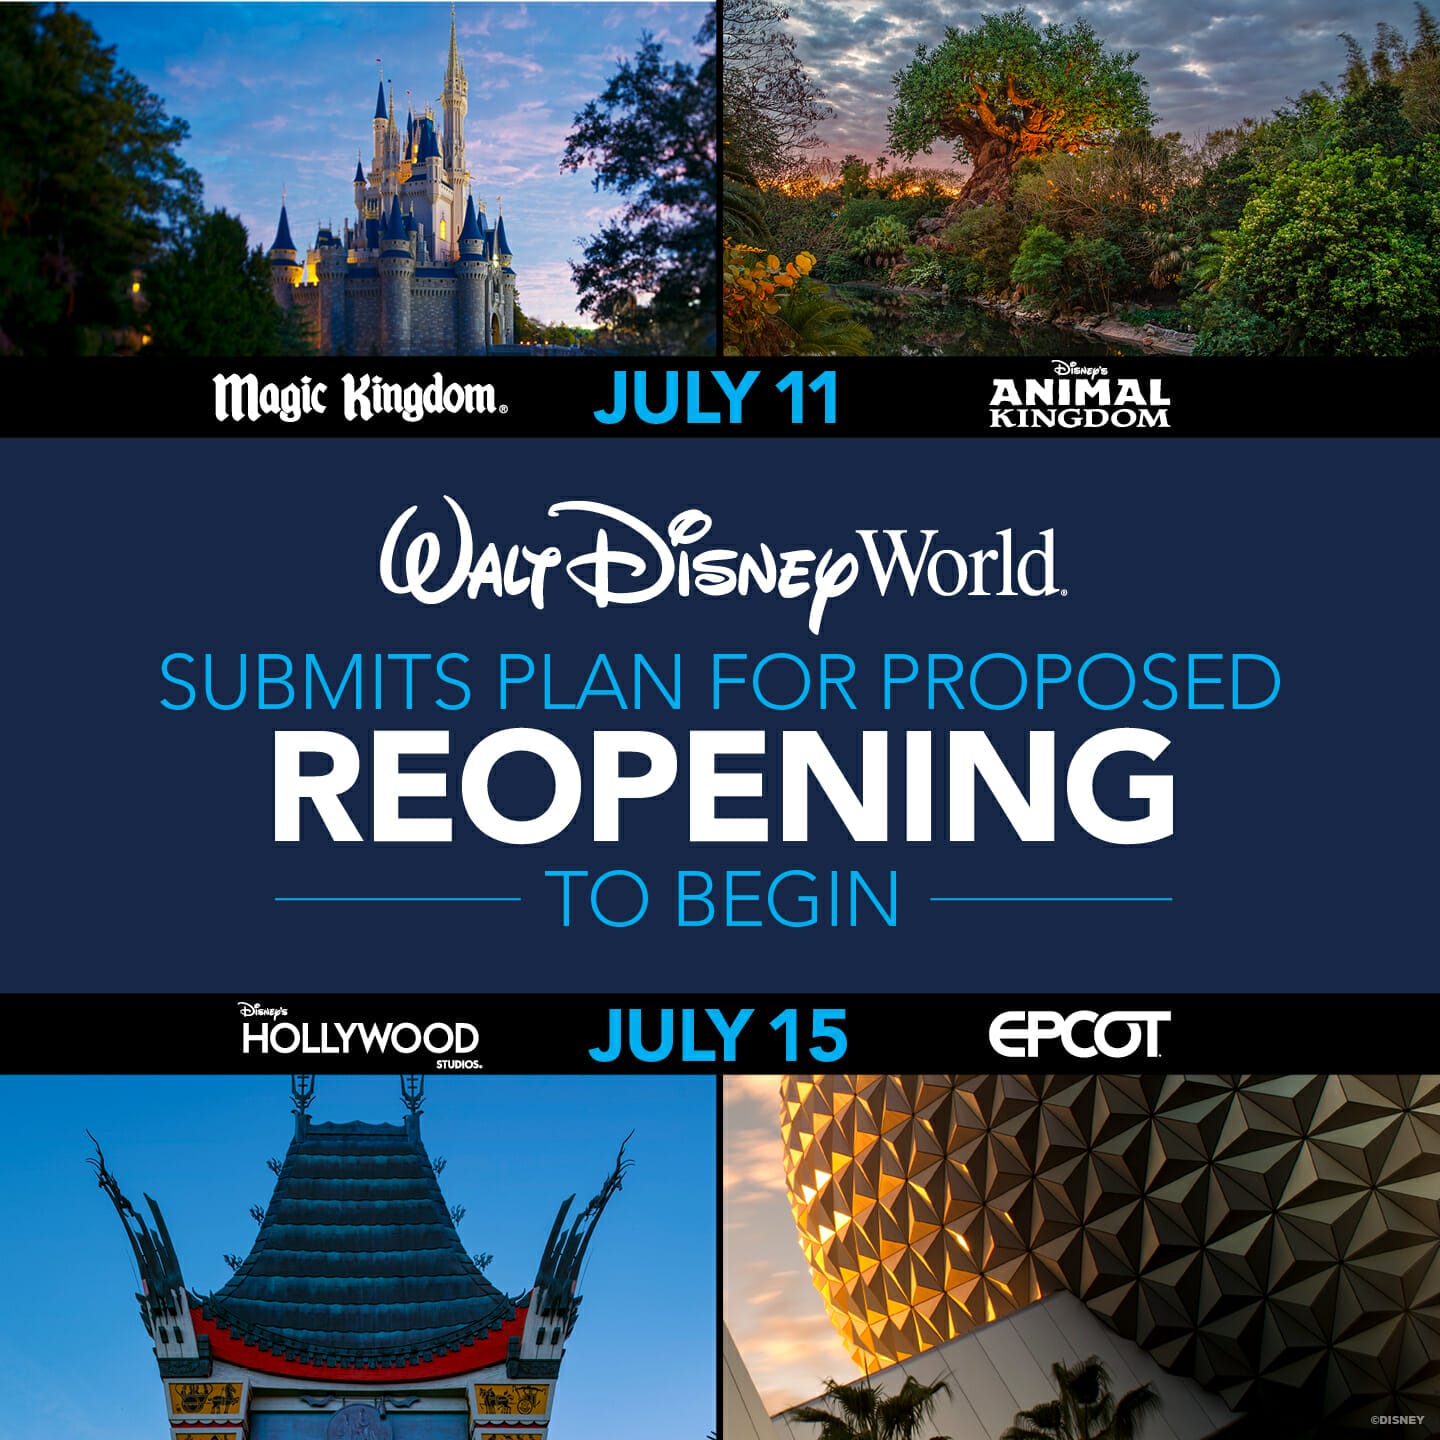 Foto do anúncio da reabertura da Disney - há uma imagem dos ícones de cada um dos parques e no centro, a frase "Walt Disney World submits plan for proposed reopening to begin July 15" 